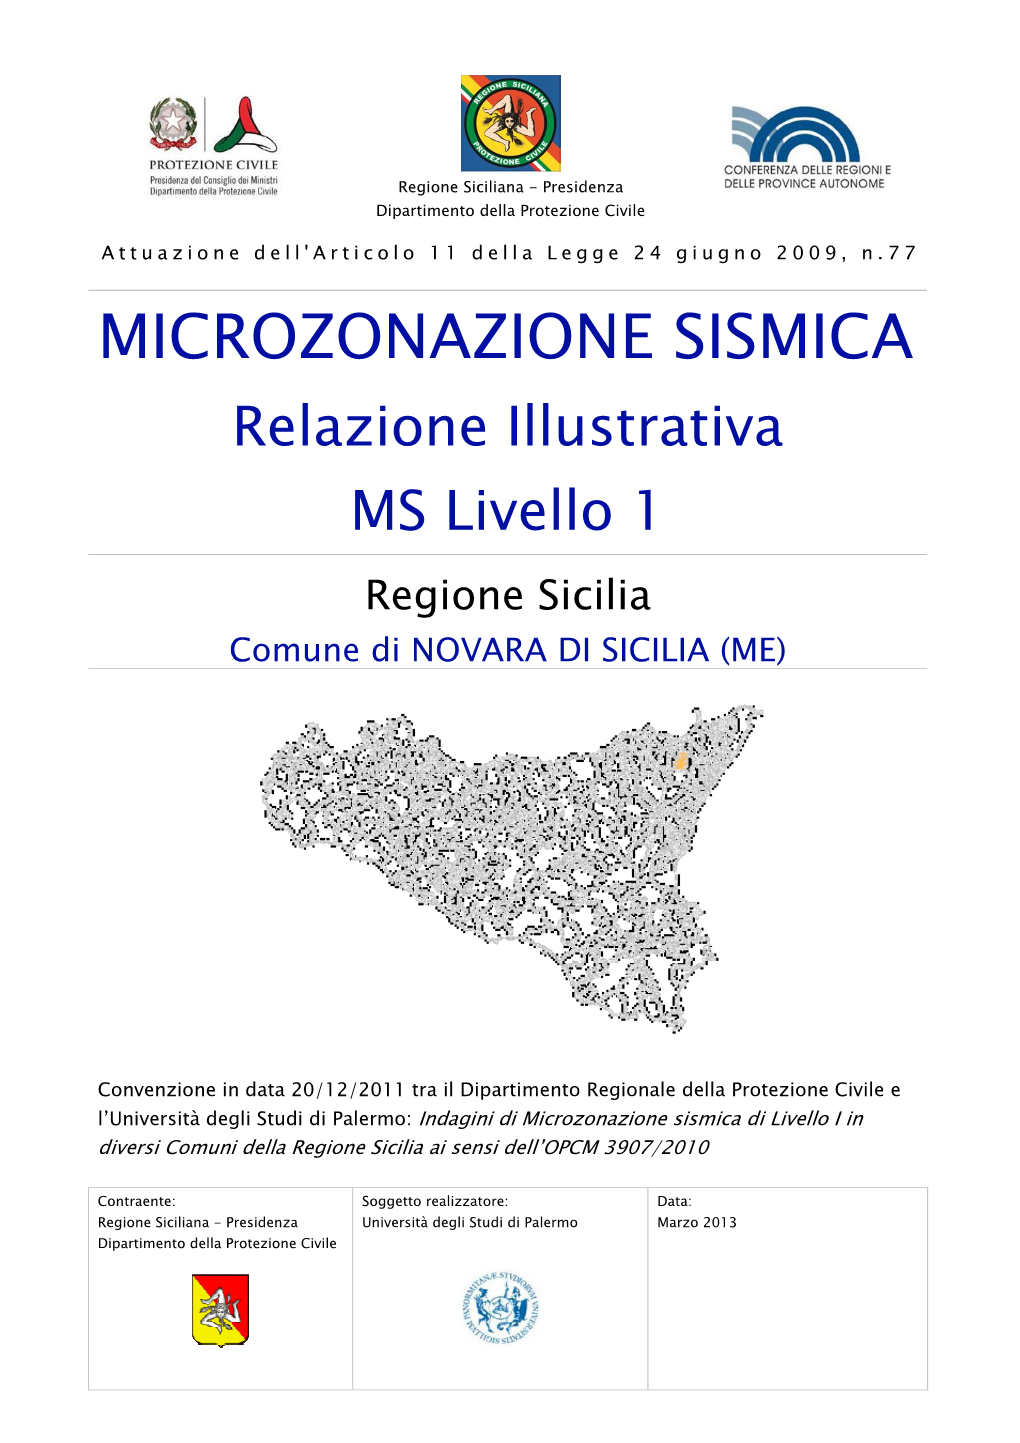 MICROZONAZIONE SISMICA Relazione Illustrativa MS Livello 1 Regione Sicilia Comune Di NOVARA DI SICILIA (ME)